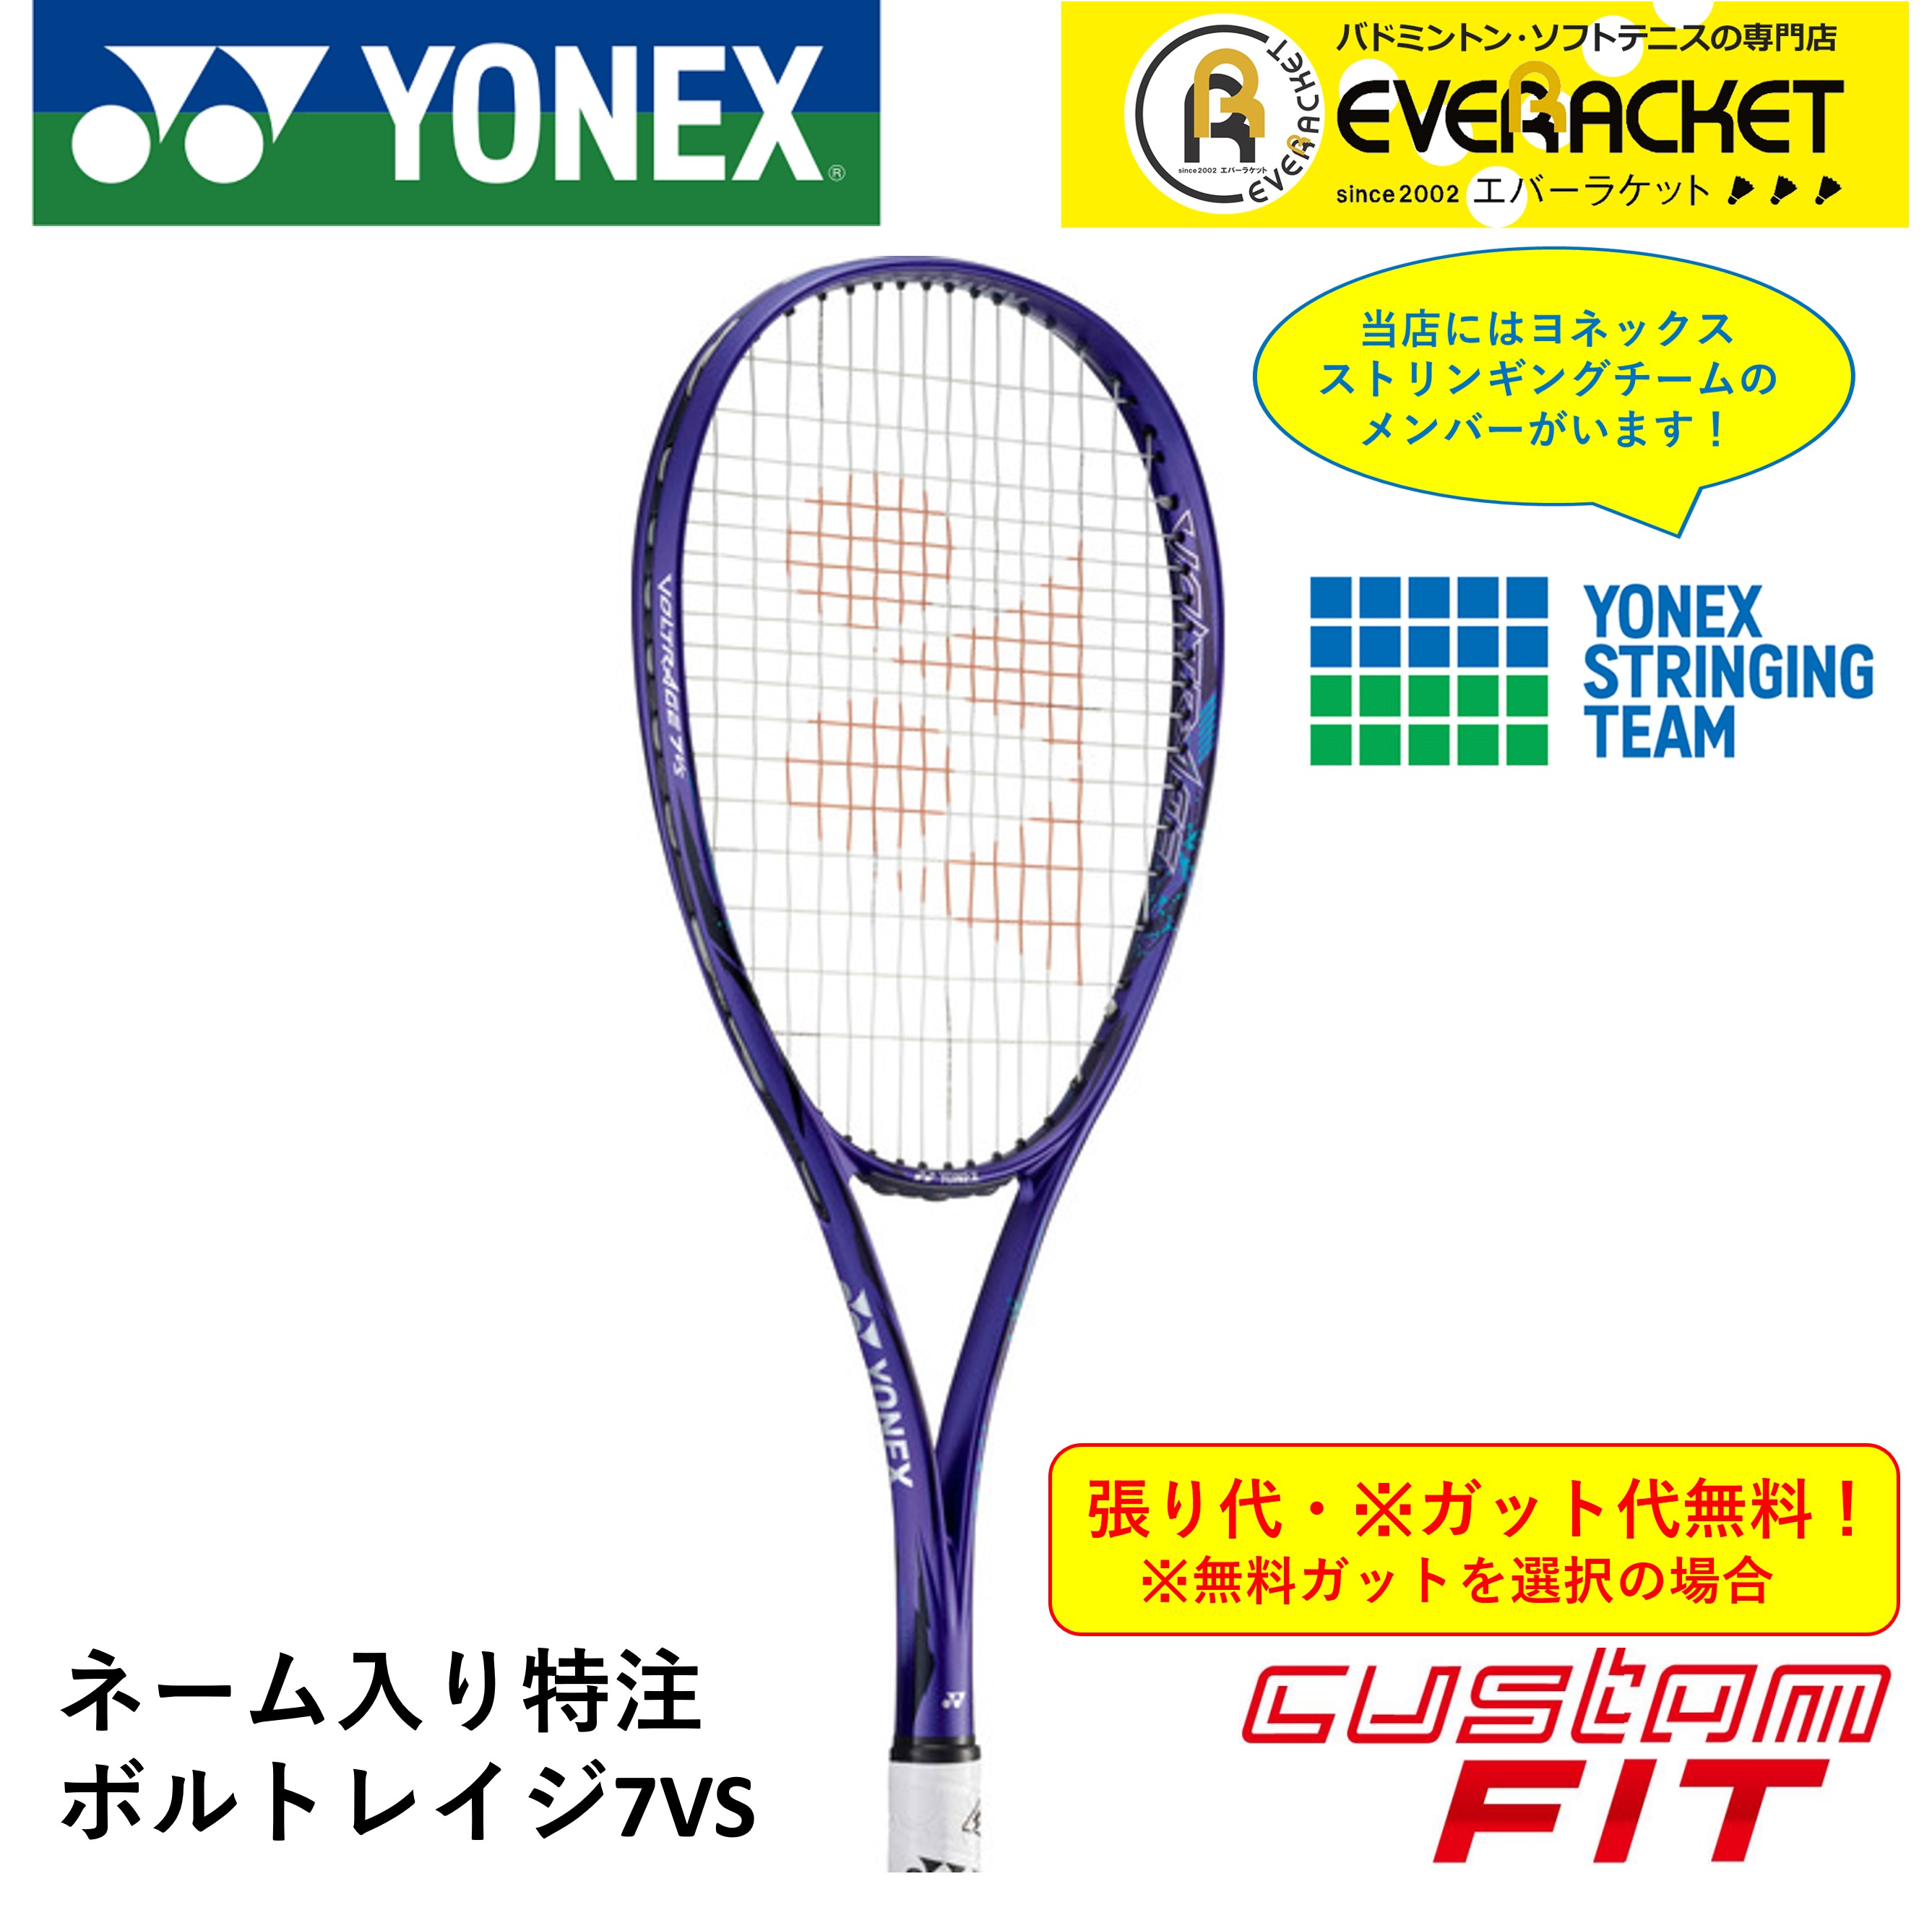 ヨネックス YONEX ソフトテニスラケット ボルトレイジ7VS VR7VS 大幅 